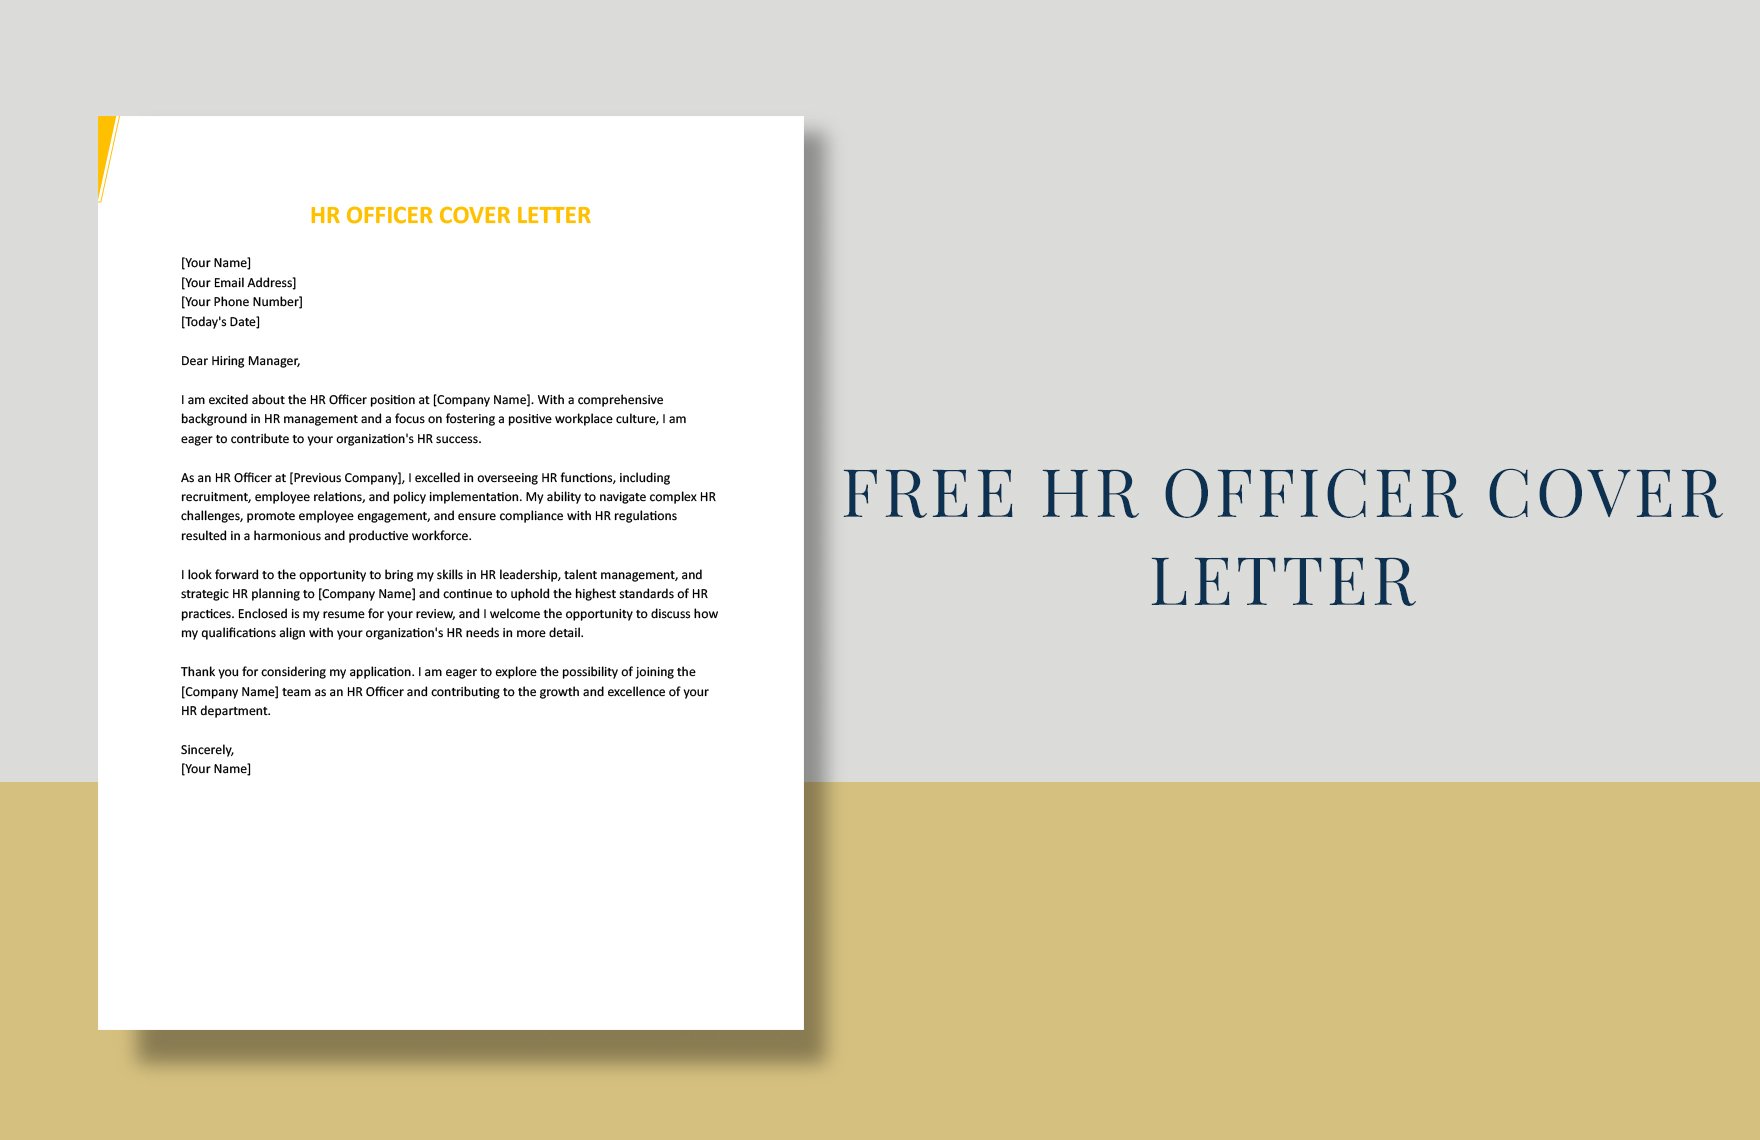 HR Officer Cover Letter